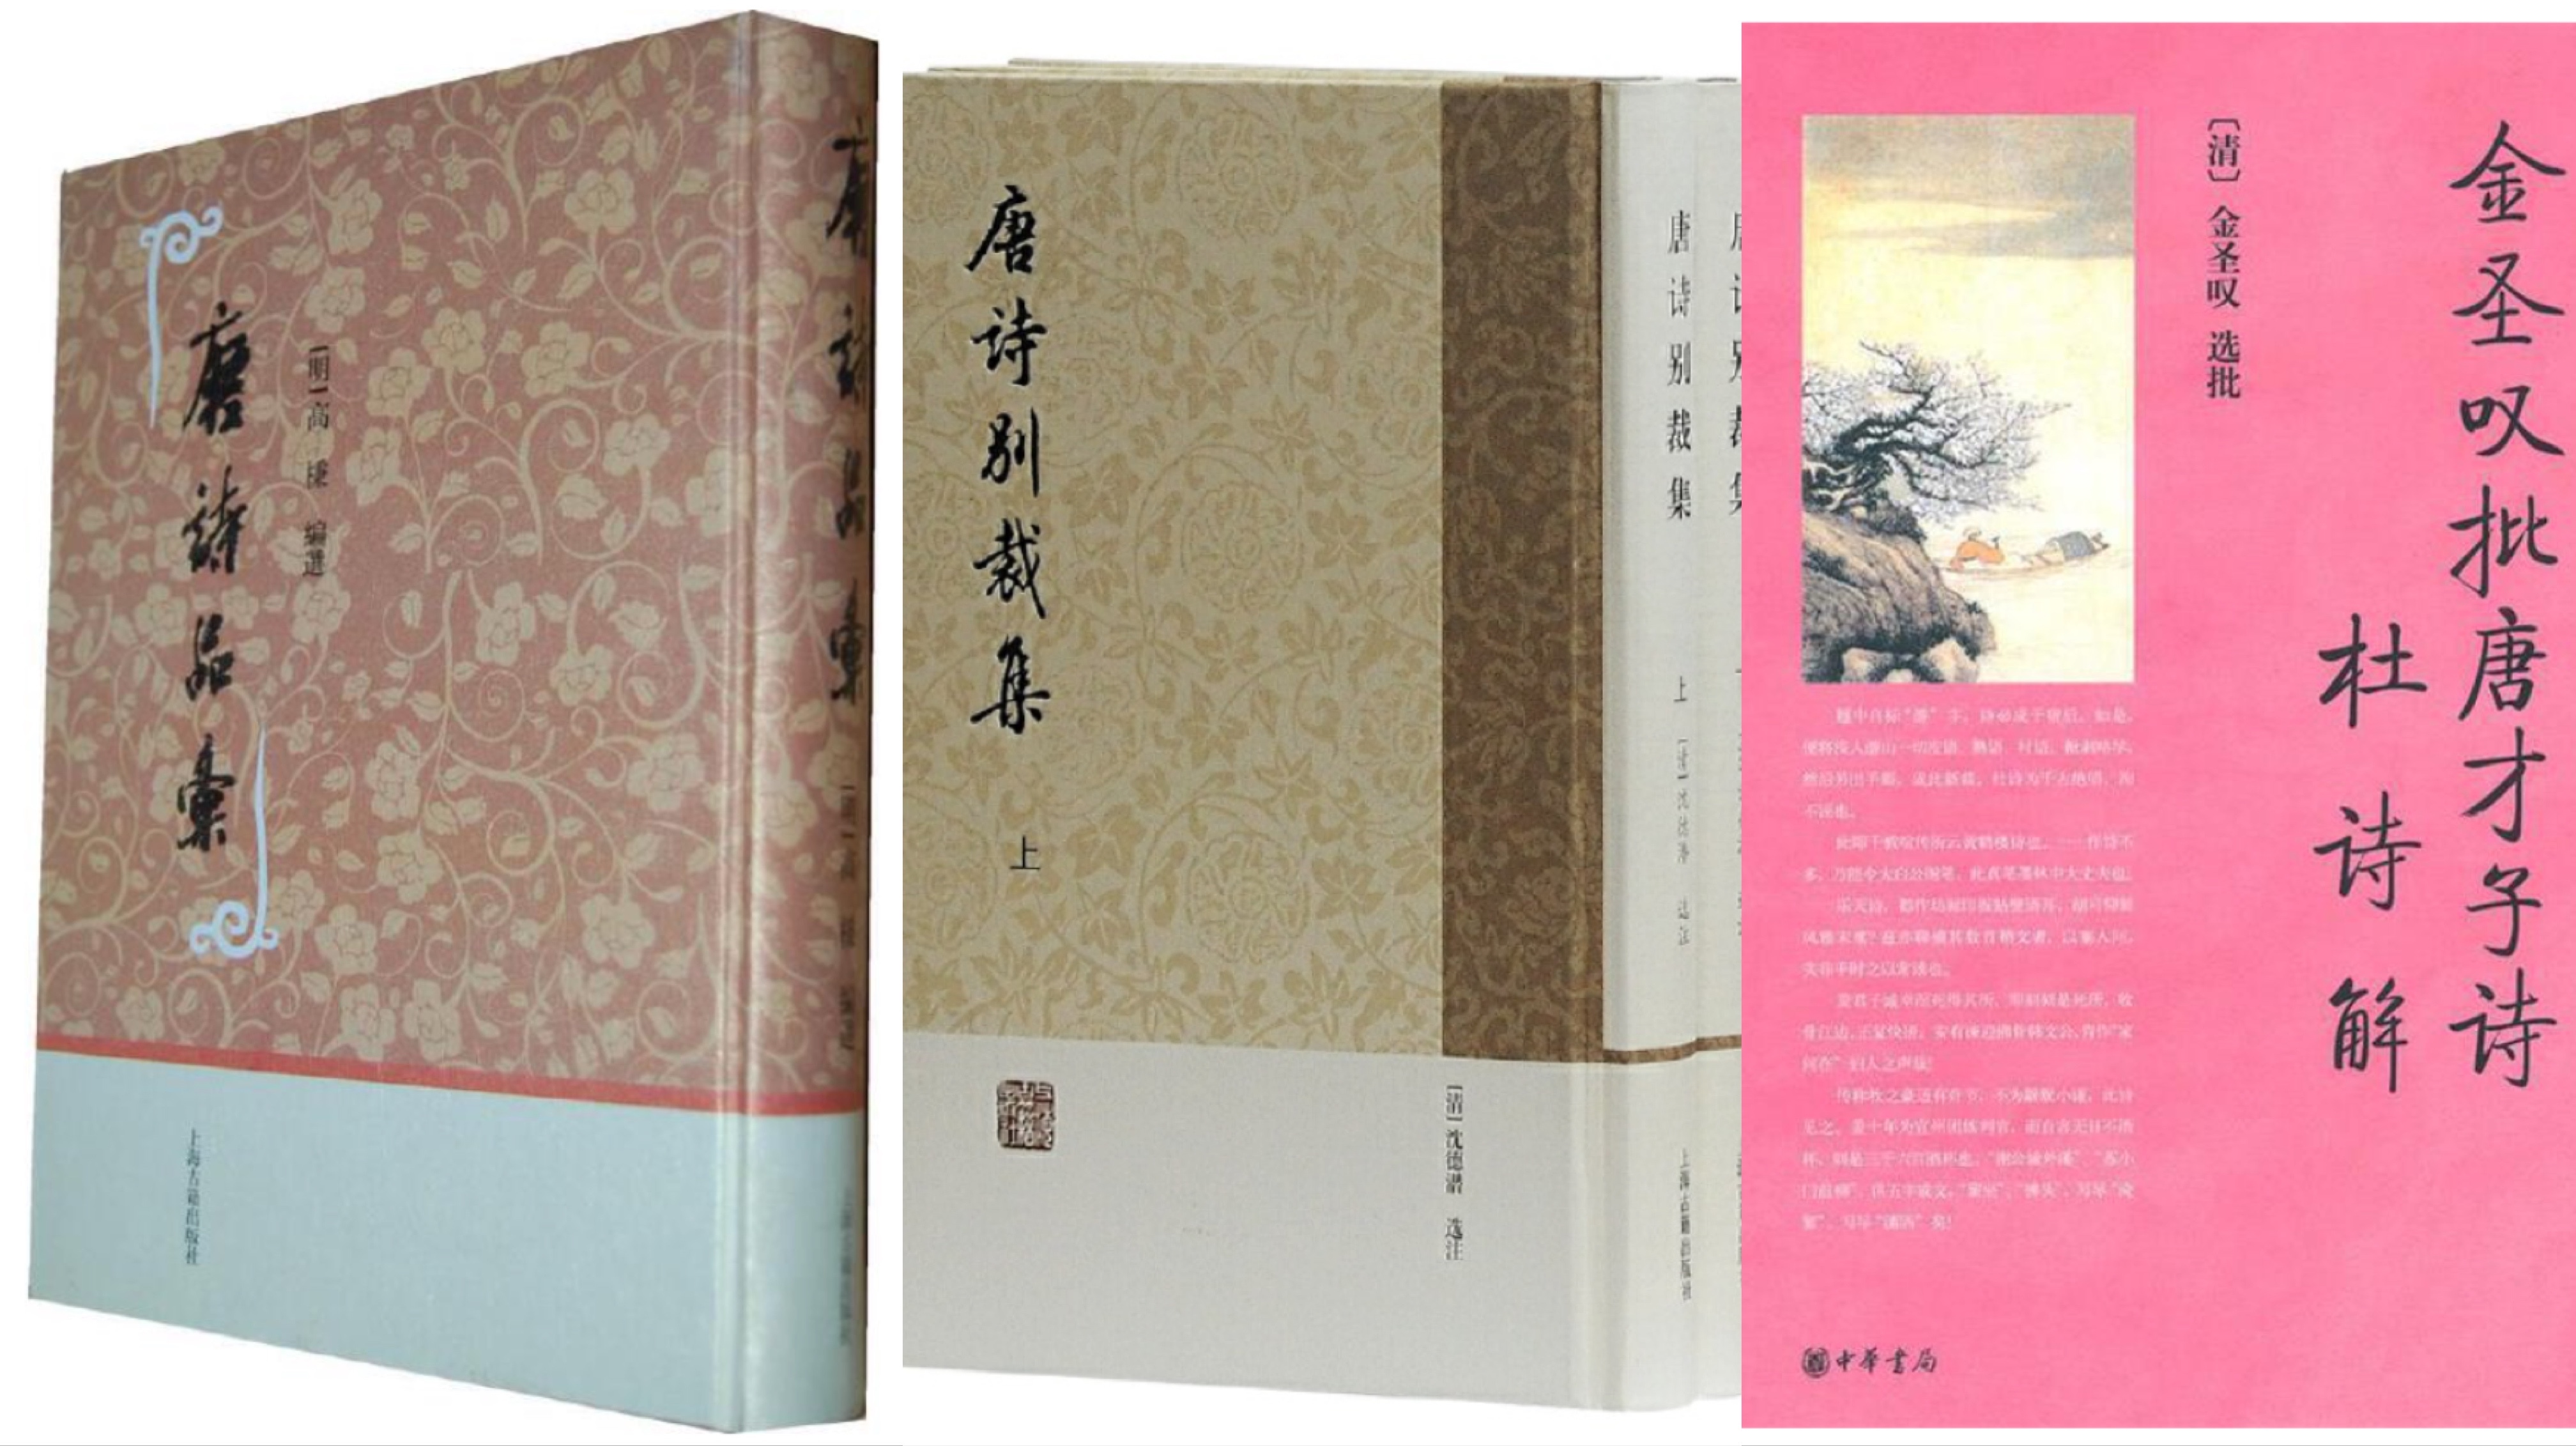 中国历代都有唐诗选本，其中不乏经典。清代蘅塘退士编写的《唐诗三百首》凝练了前代的经验，并在唐诗选录上更贴合现代人对唐诗的审美趣味。